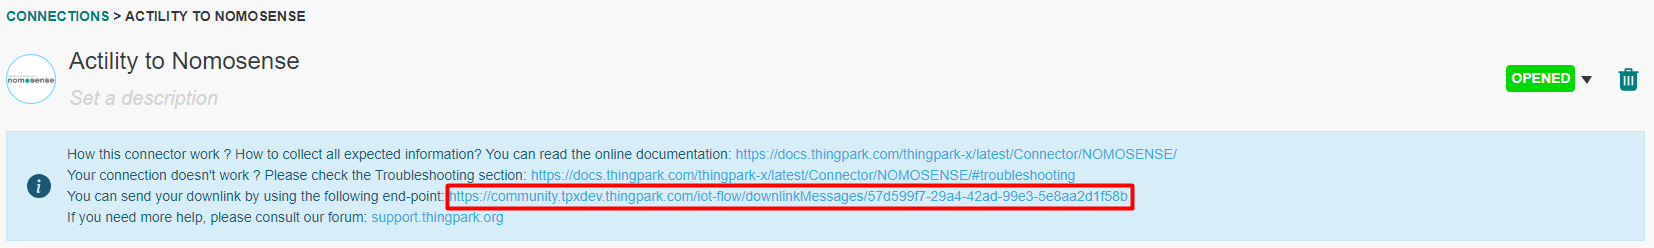 Downlink URL